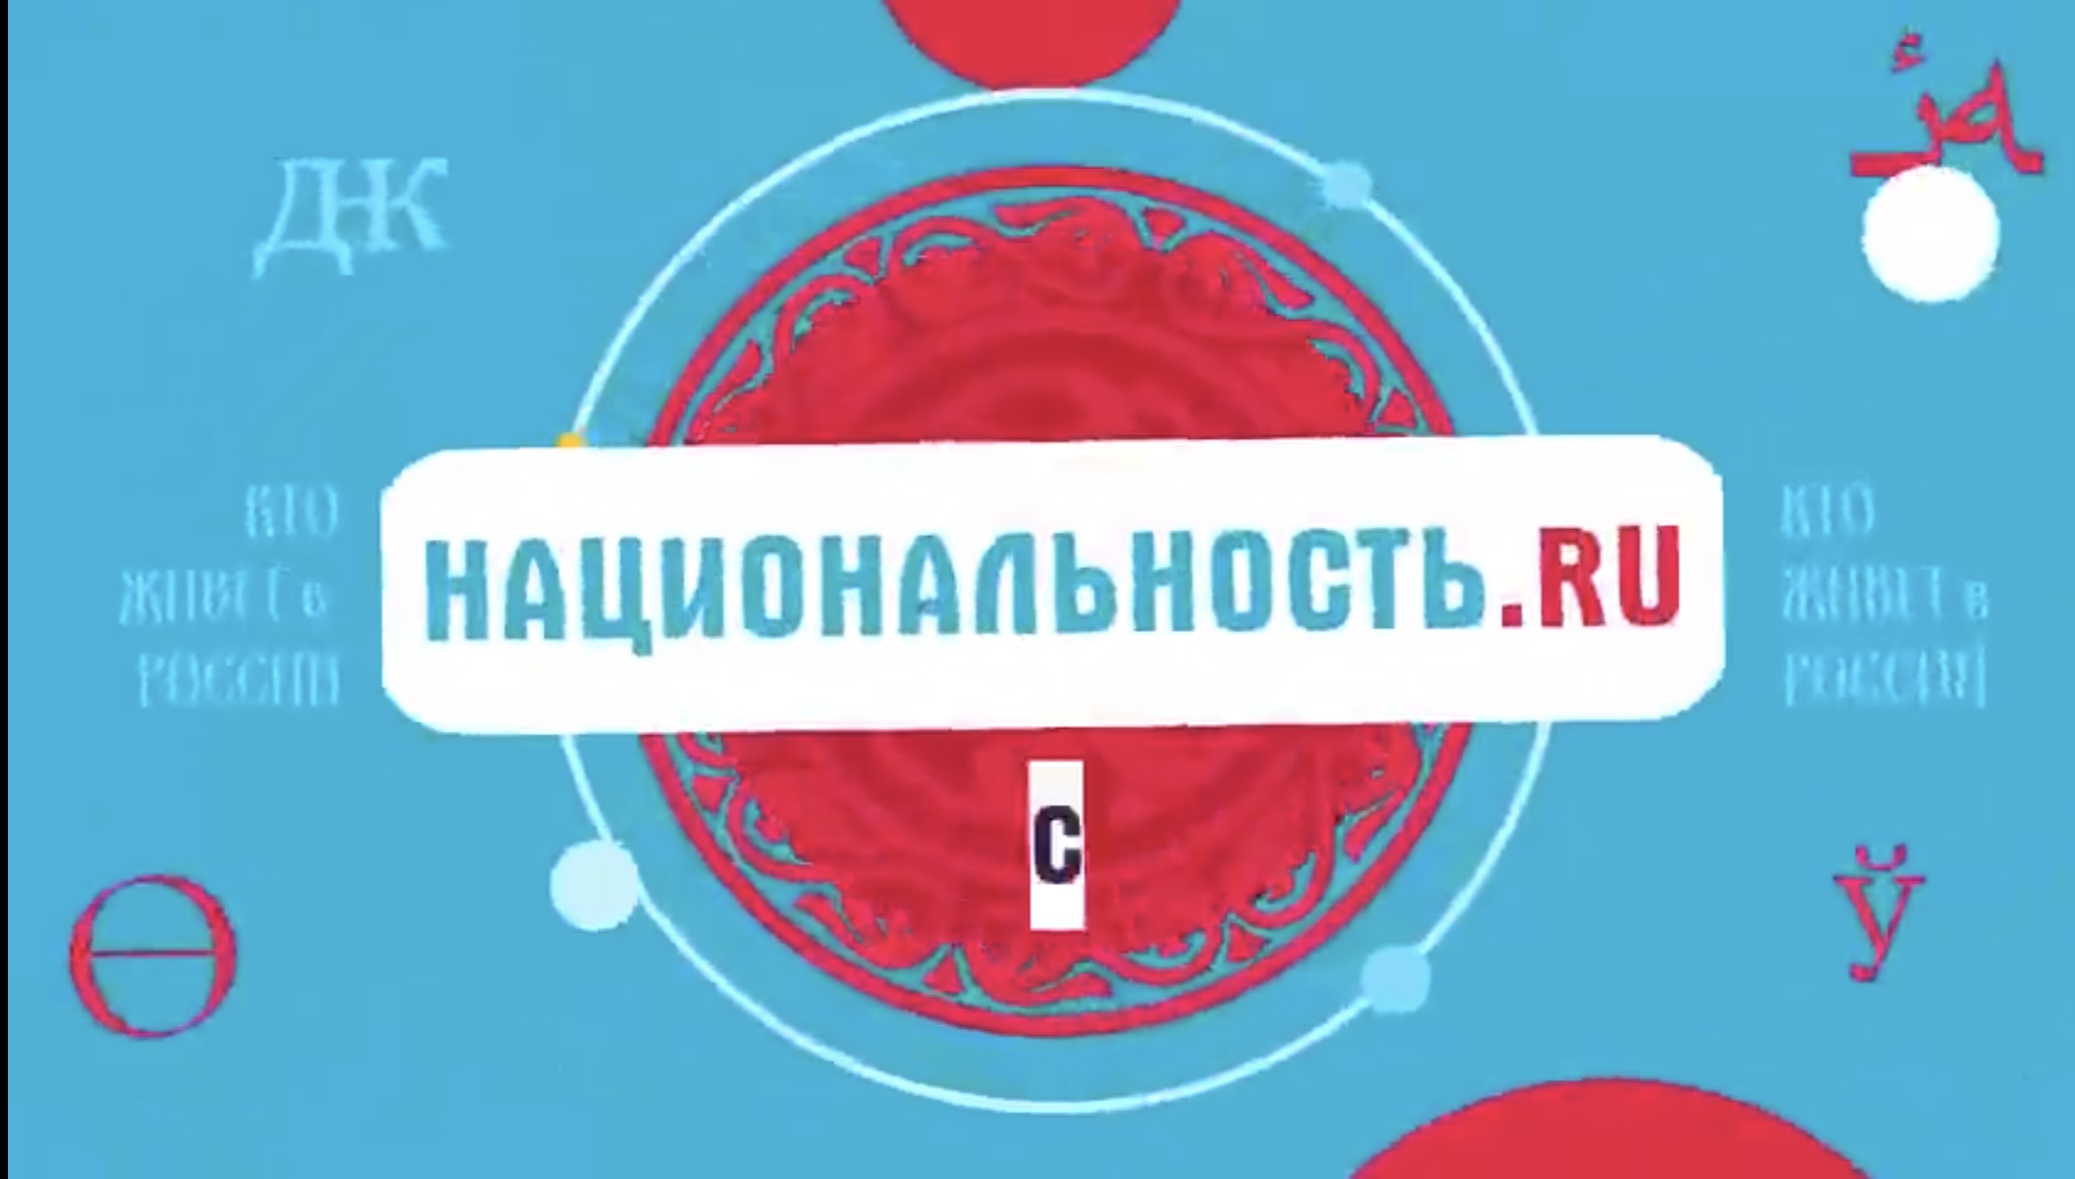 В июле запущен второй сезон тревел-шоу &quot;Национальность.ru&quot; о традициях и культуре народов России✨.